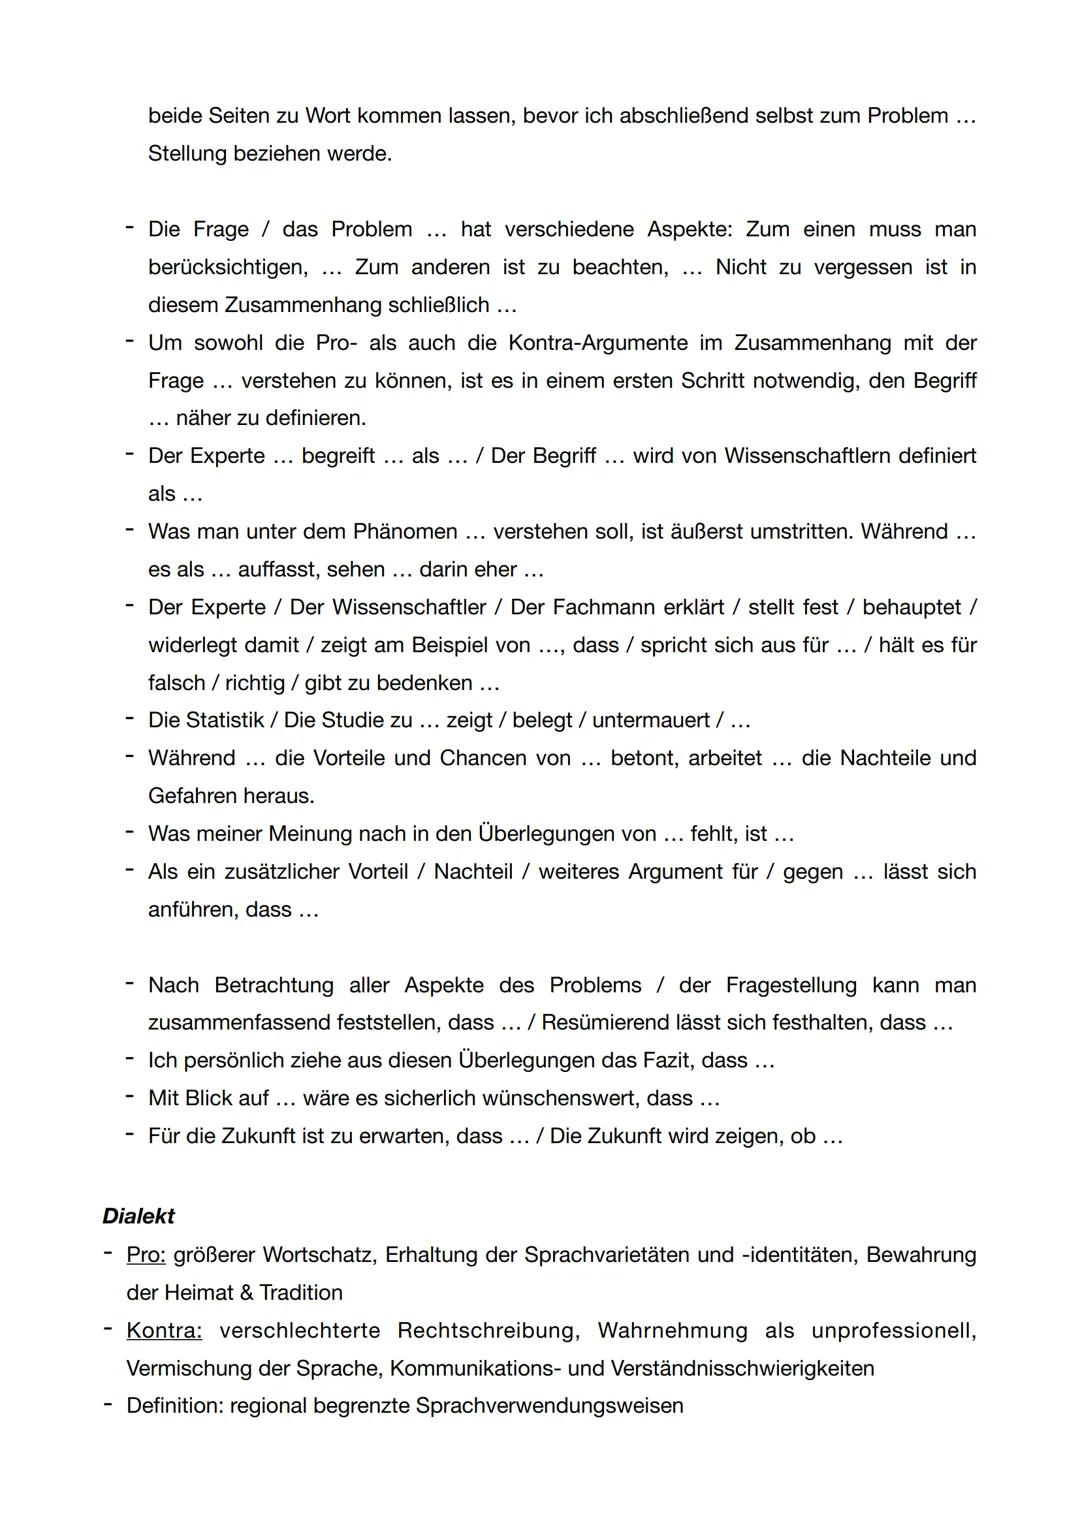 Vorbereitung 2. Deutsch Klausur
Materialgestütztes Schreiben
Allgemein
Überschrift finden, die das Thema zusammenfasst
Einleitung
Relevanz z